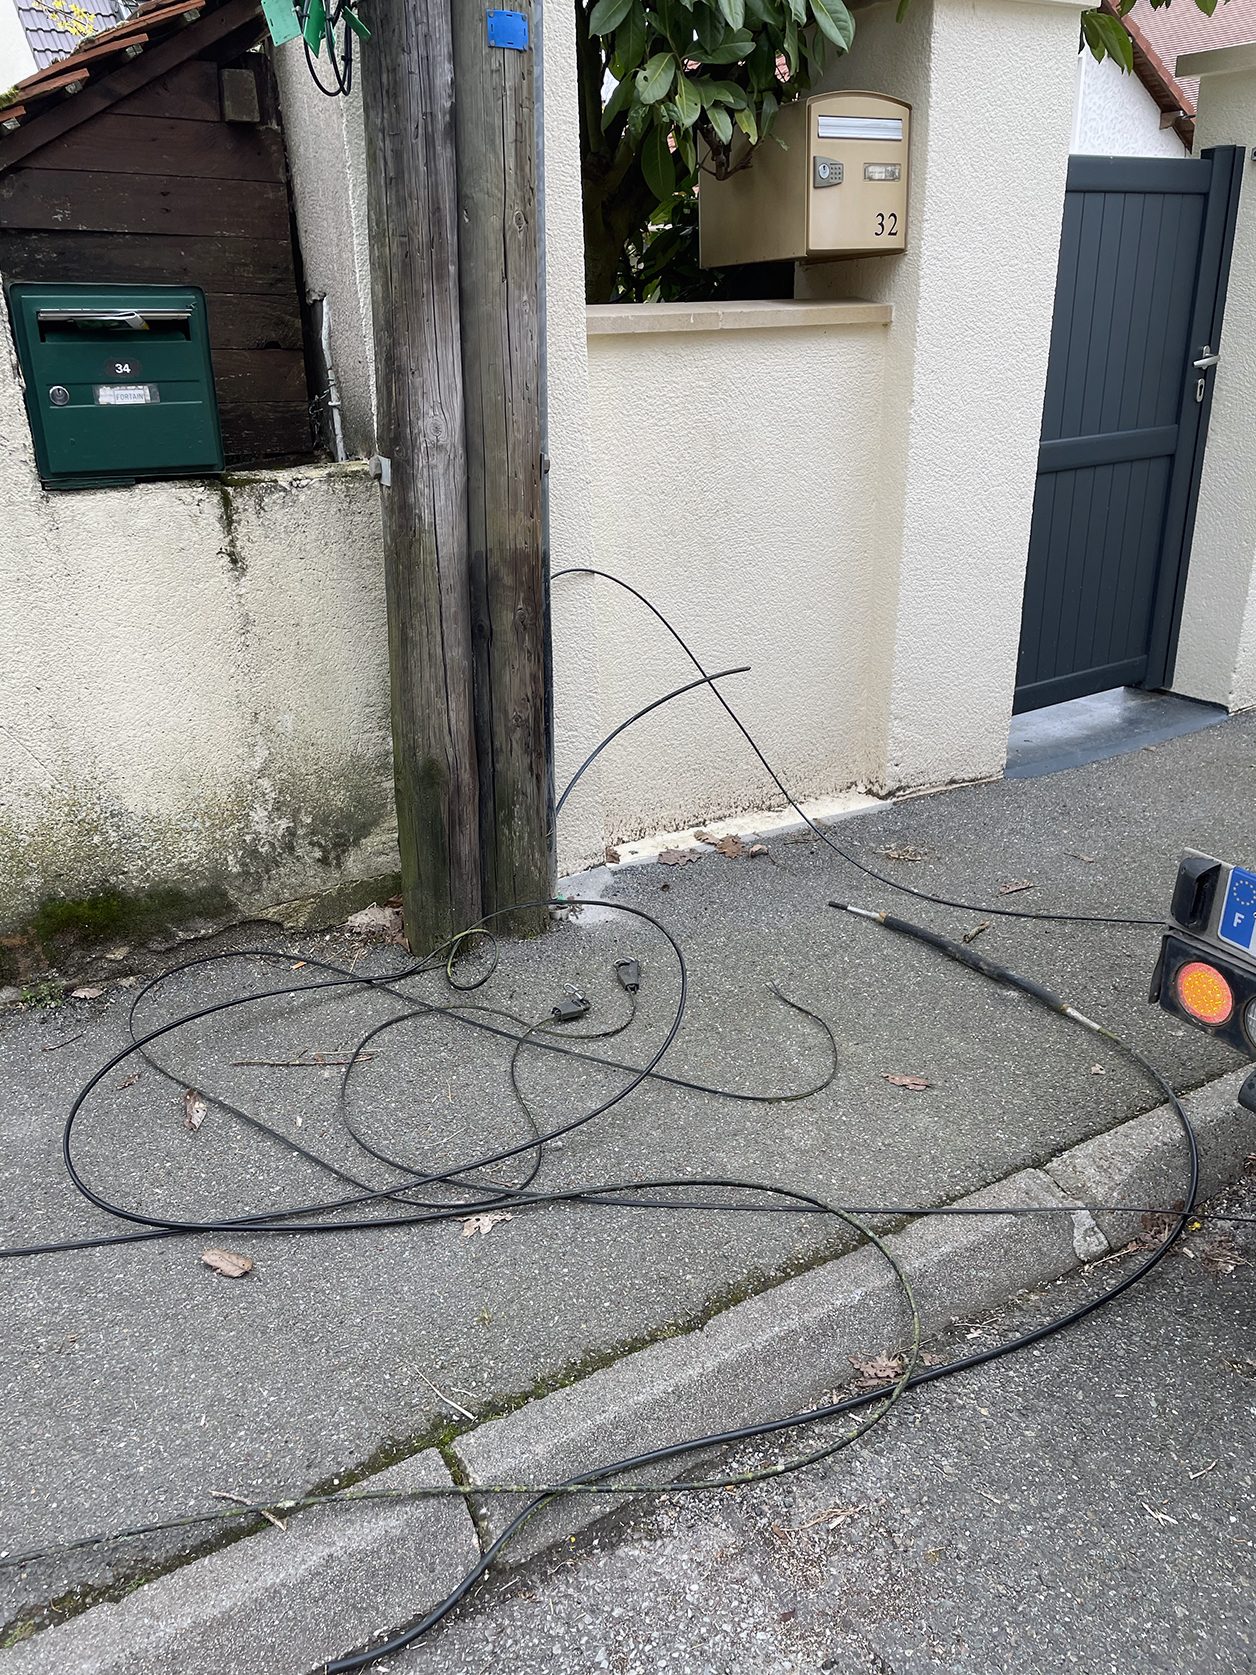 Les câbles en cuivre s'accumulent sur le trottoir.